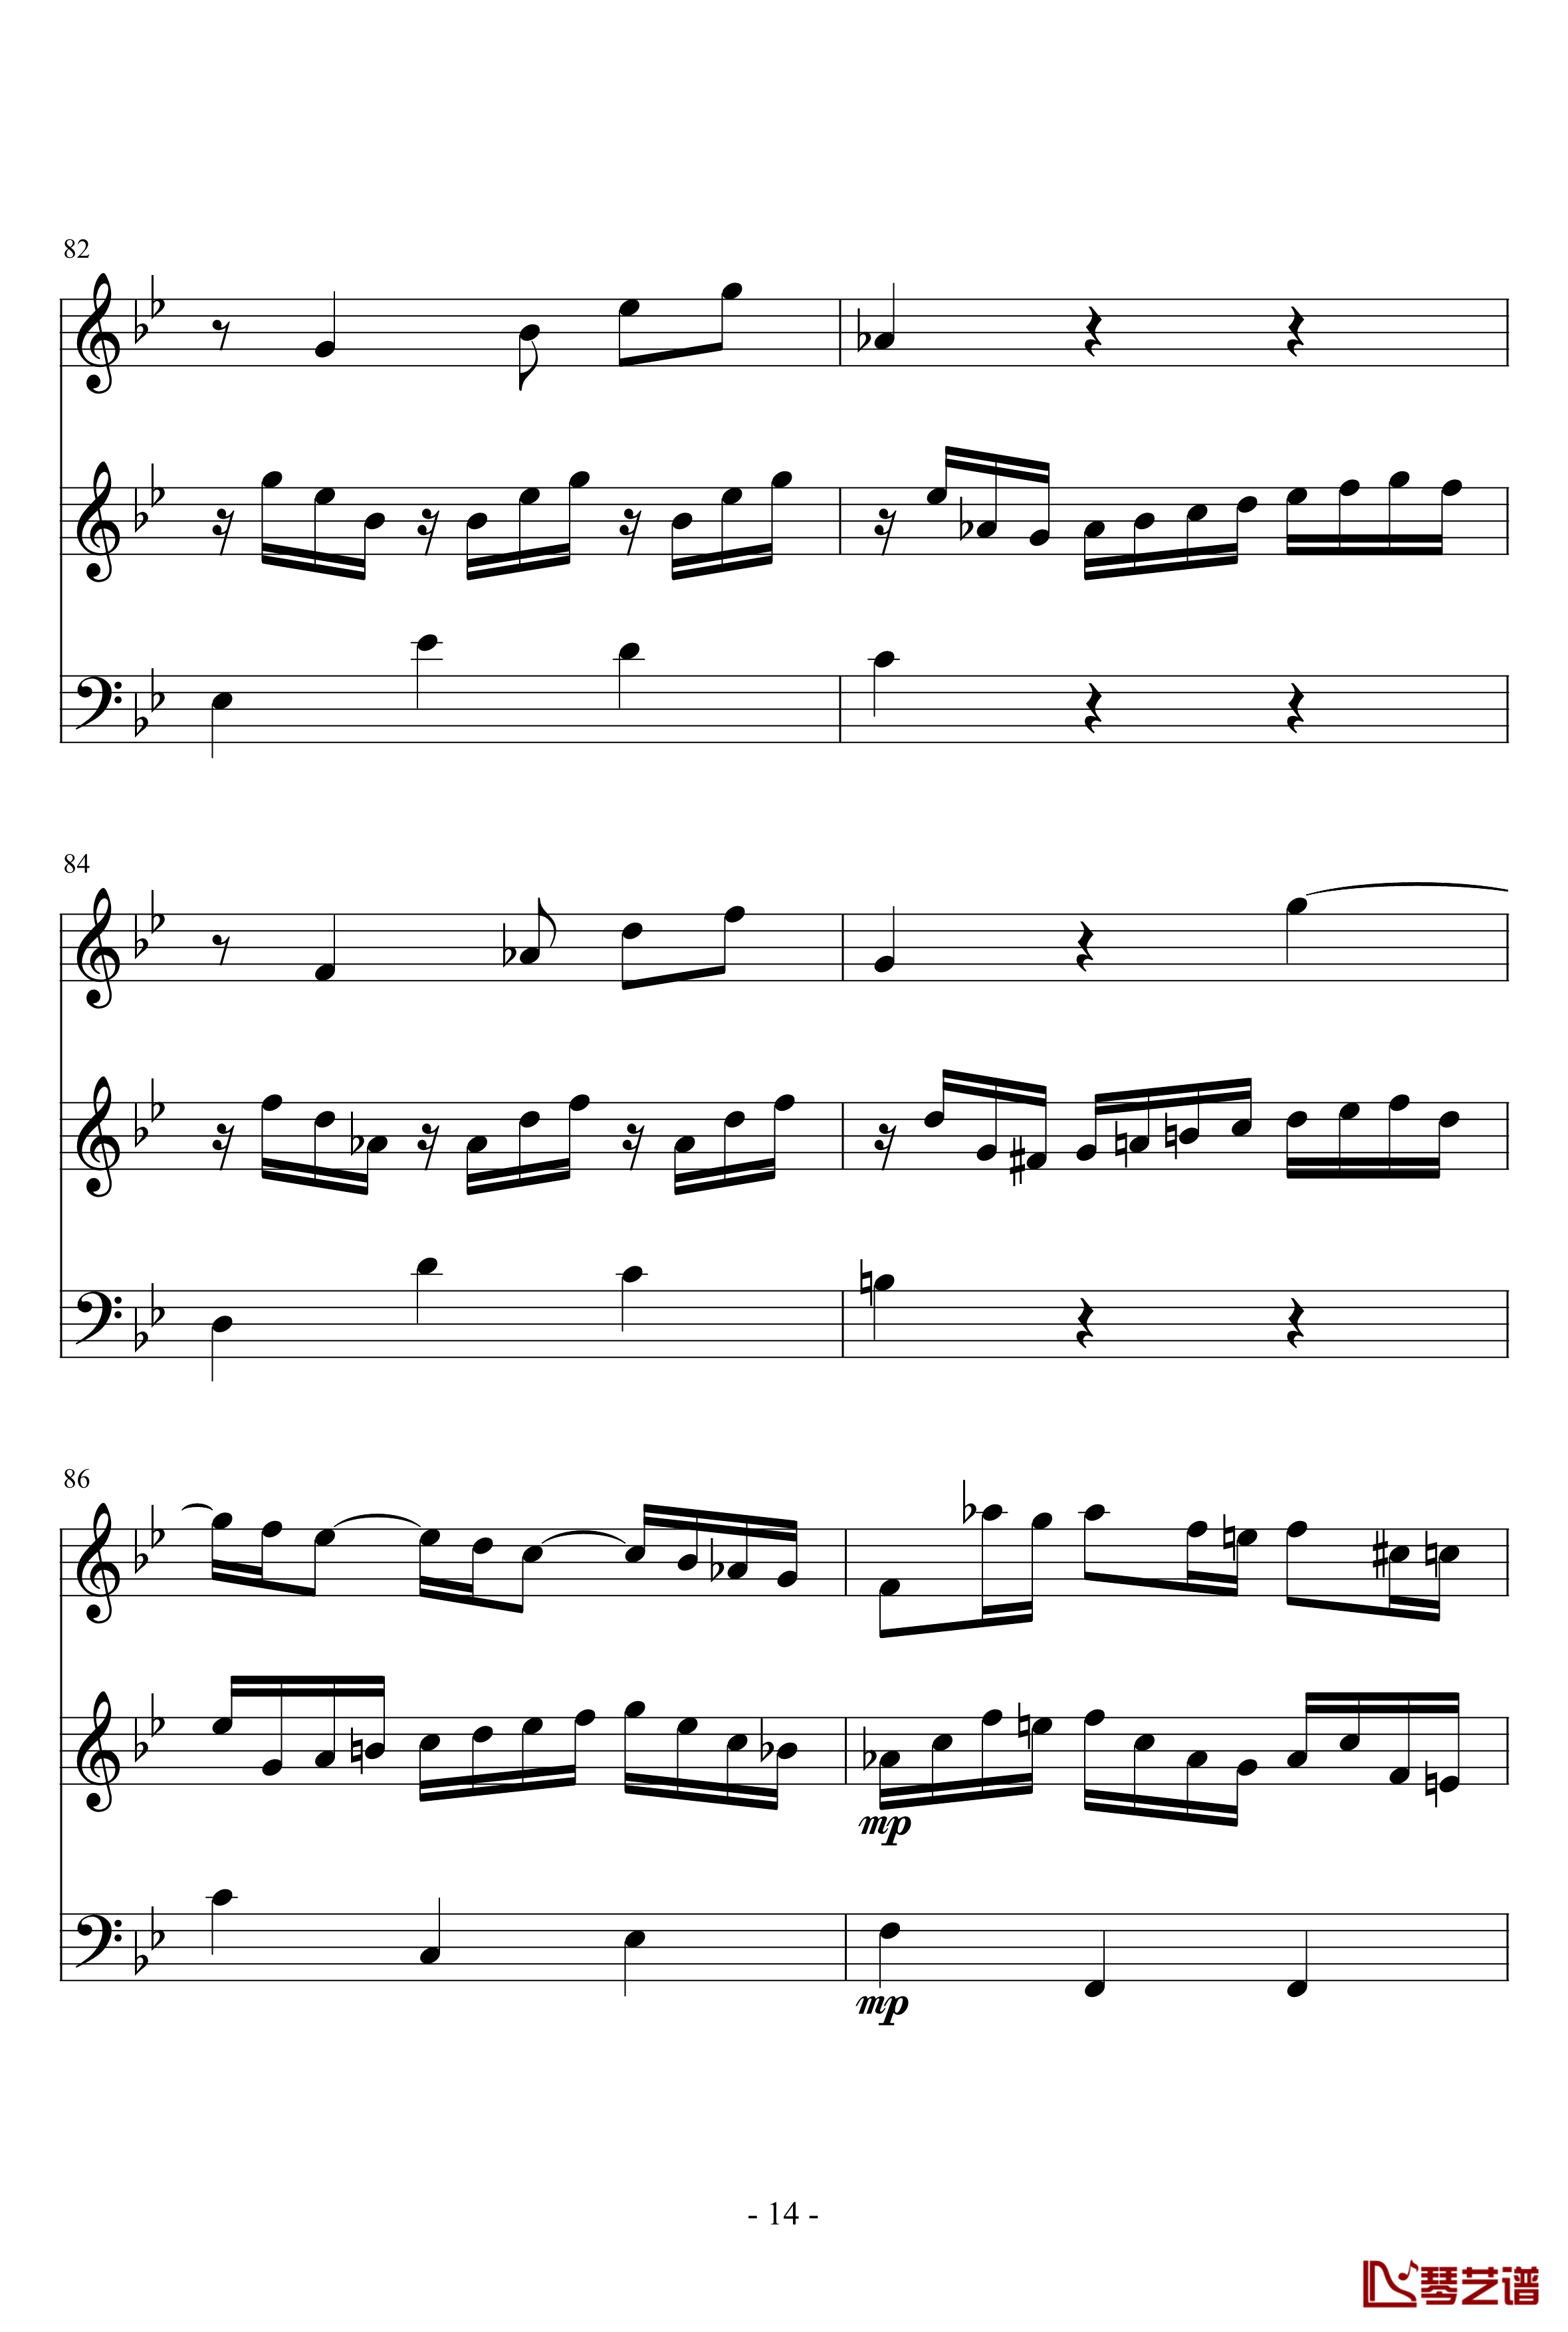 长笛与羽管键琴奏鸣曲第一乐章钢琴谱-巴赫-P.E.Bach14